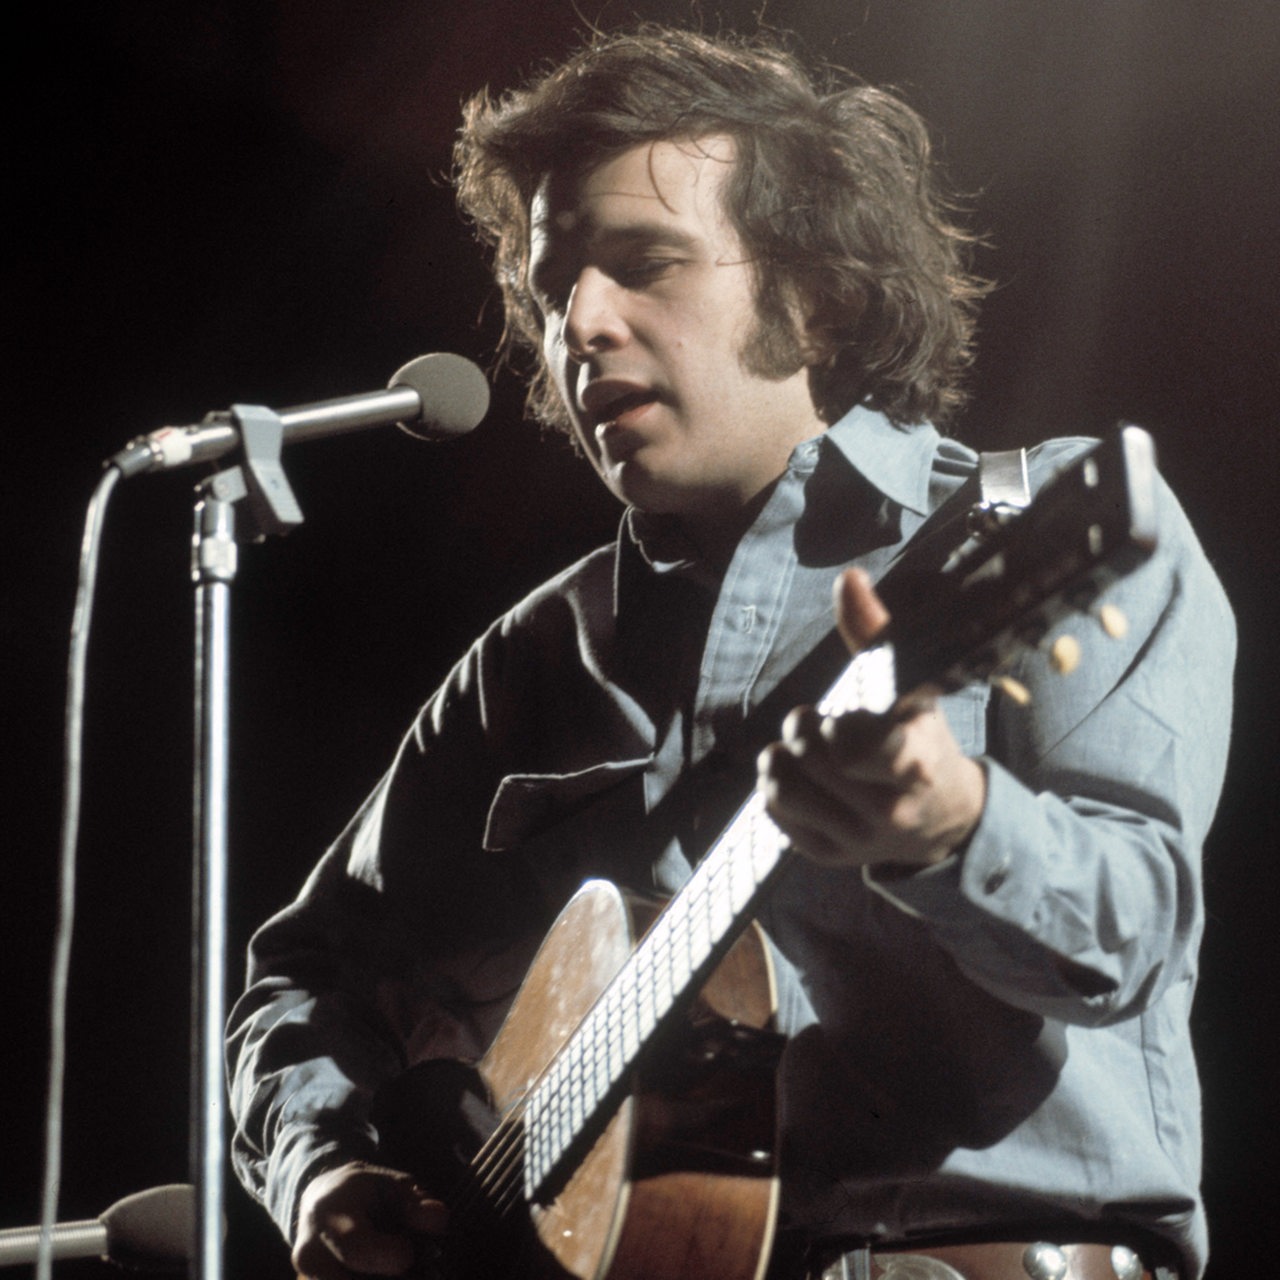 Der Folk-Sänger Don McLean in den 70er Jahren auf der Bühne